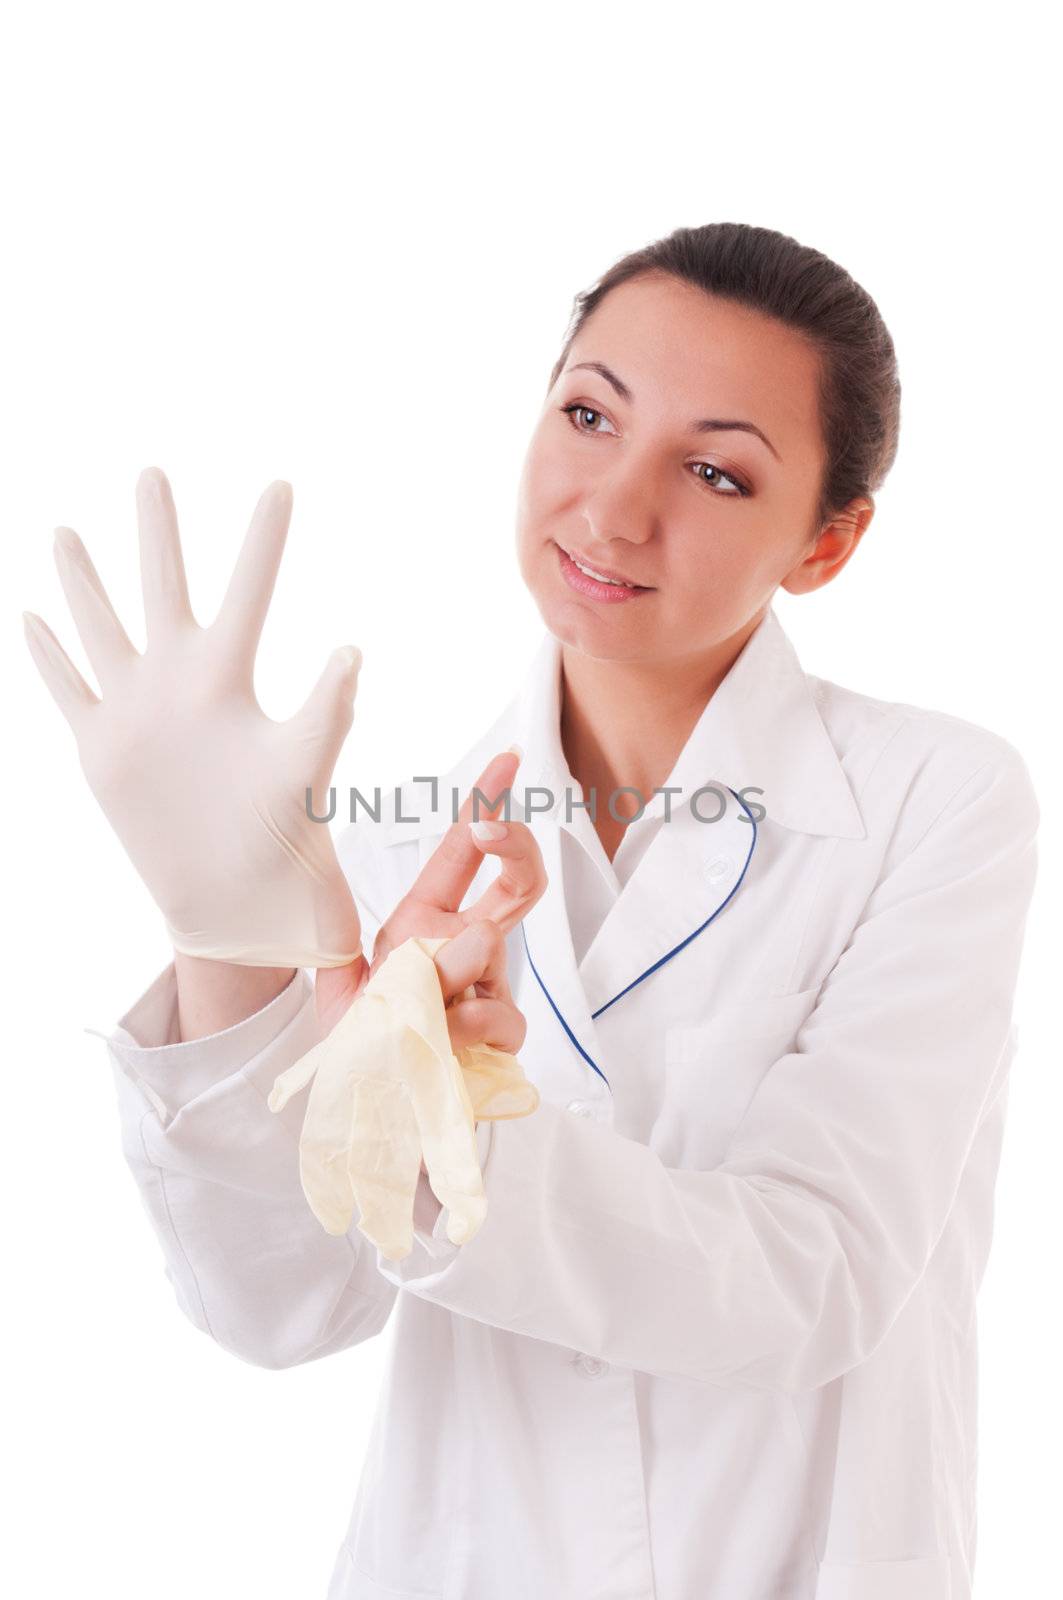 Medical gloves dressing by iryna_rasko